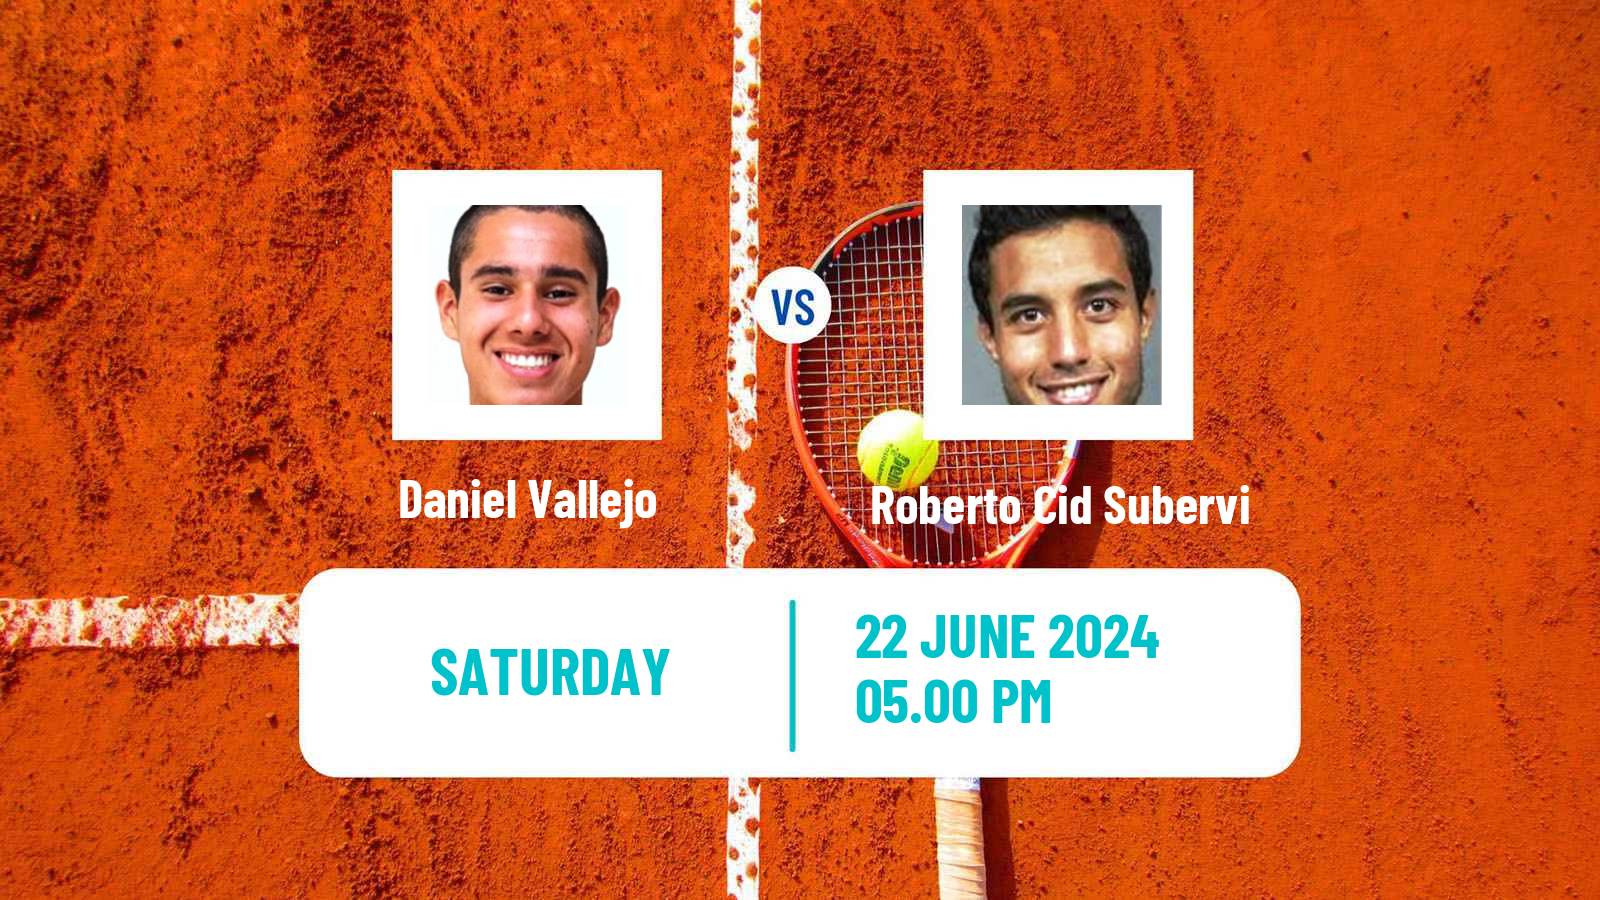 Tennis Davis Cup Group III Daniel Vallejo - Roberto Cid Subervi